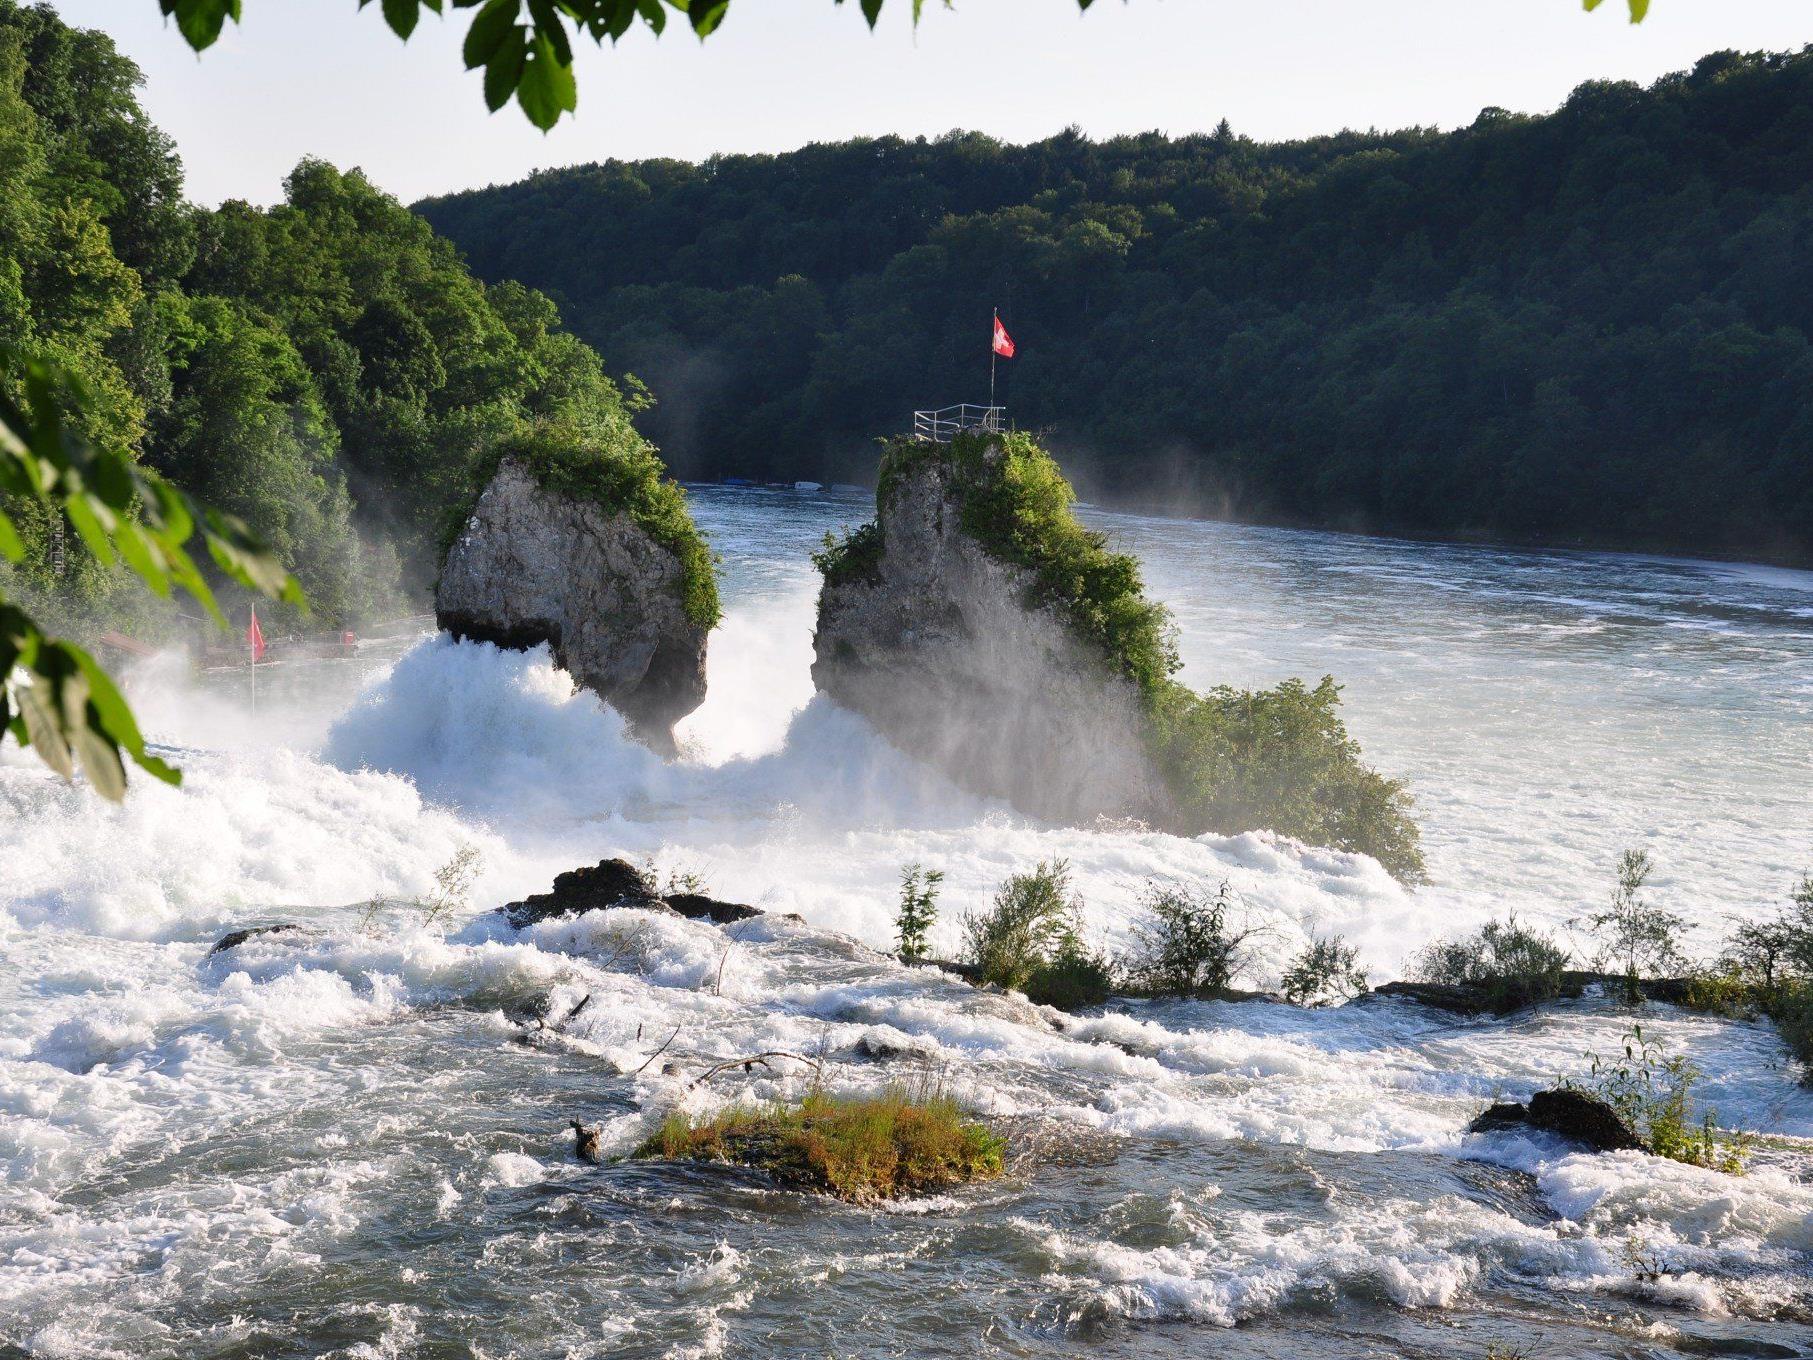 1,3 Millionen Menschen aus aller Welt lassen sich dieses Spektakel jedes Jahr nicht entgehen: Der Rheinfall – größter Wasserfall Europas – weckt nun auch Begehrlichkeiten der Stromproduzenten.